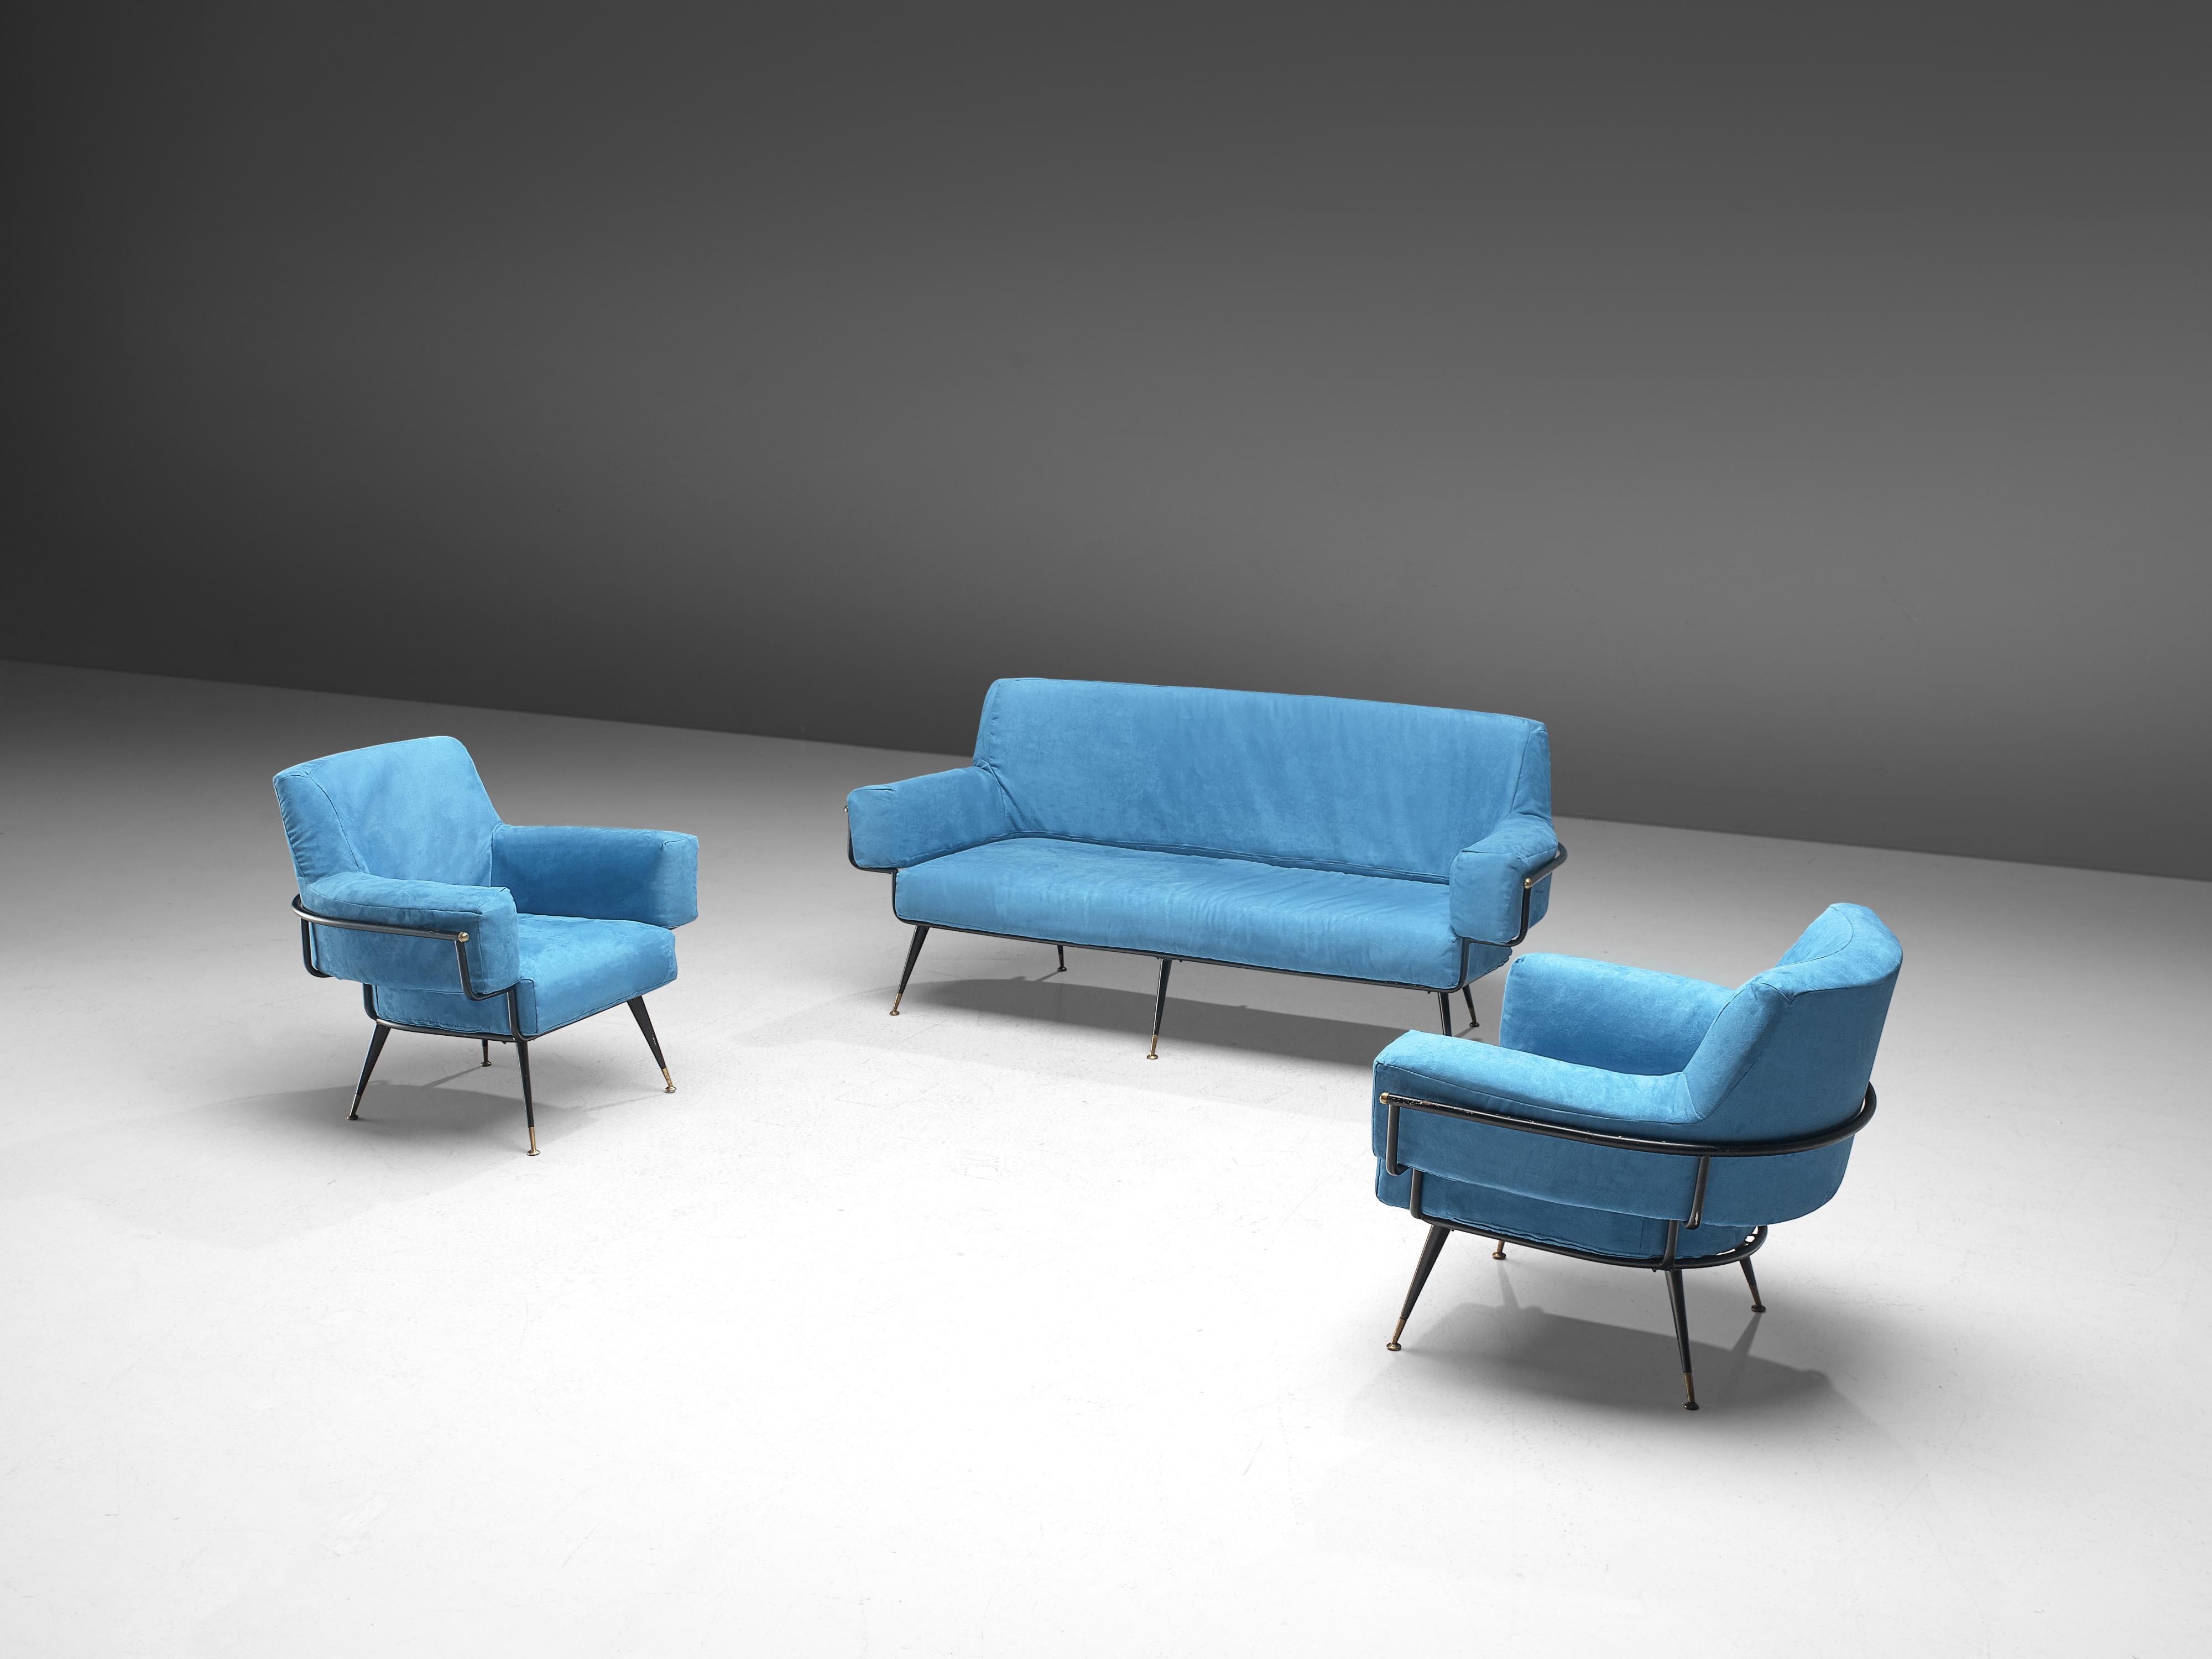 Mid-20th Century Italian Sofa in Vibrant Blue Velvet For Sale